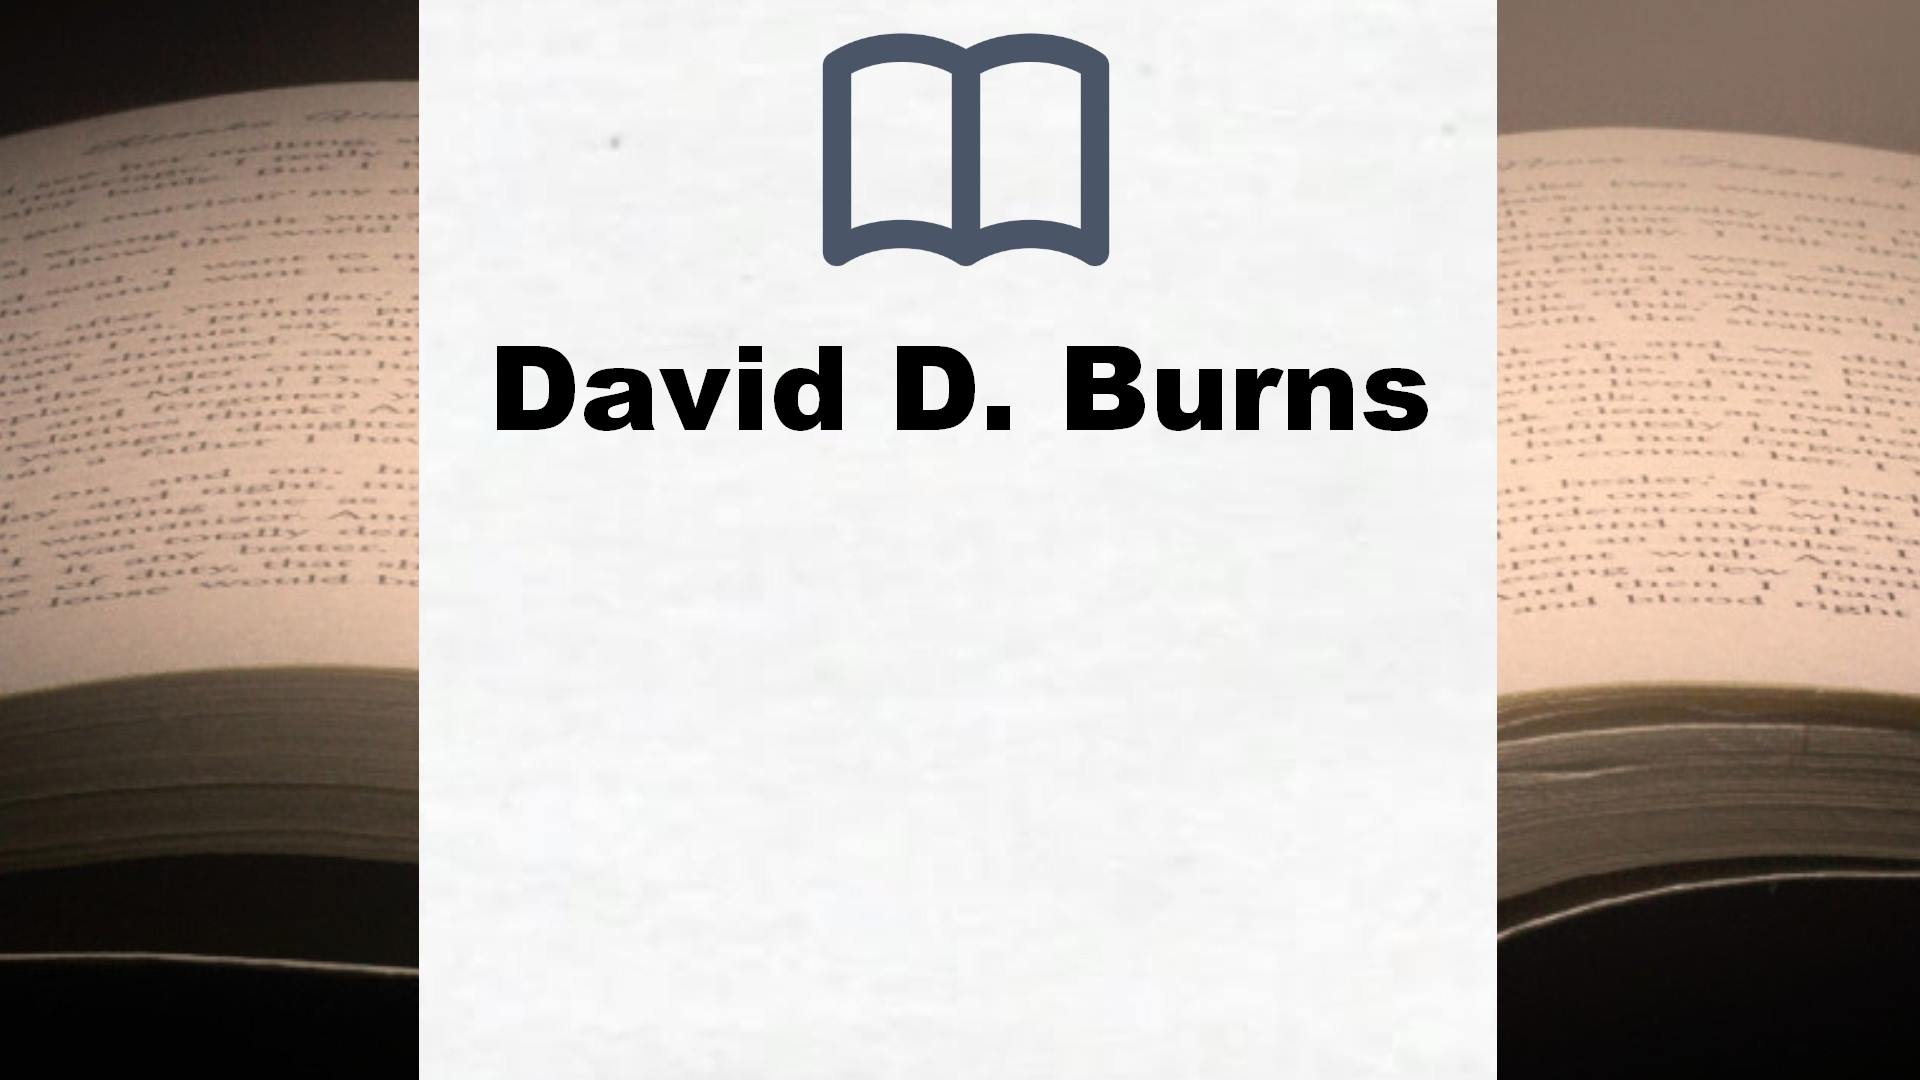 Libros David D. Burns